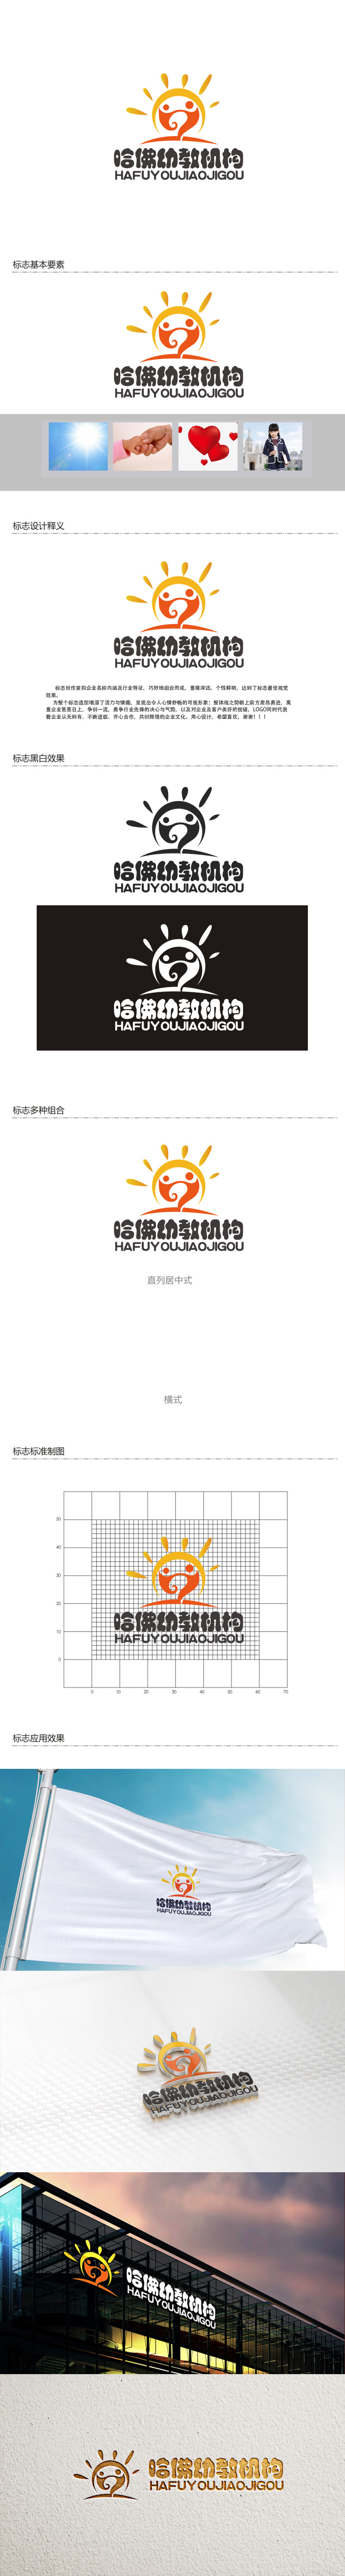 秦晓东的哈佛幼教机构logo设计